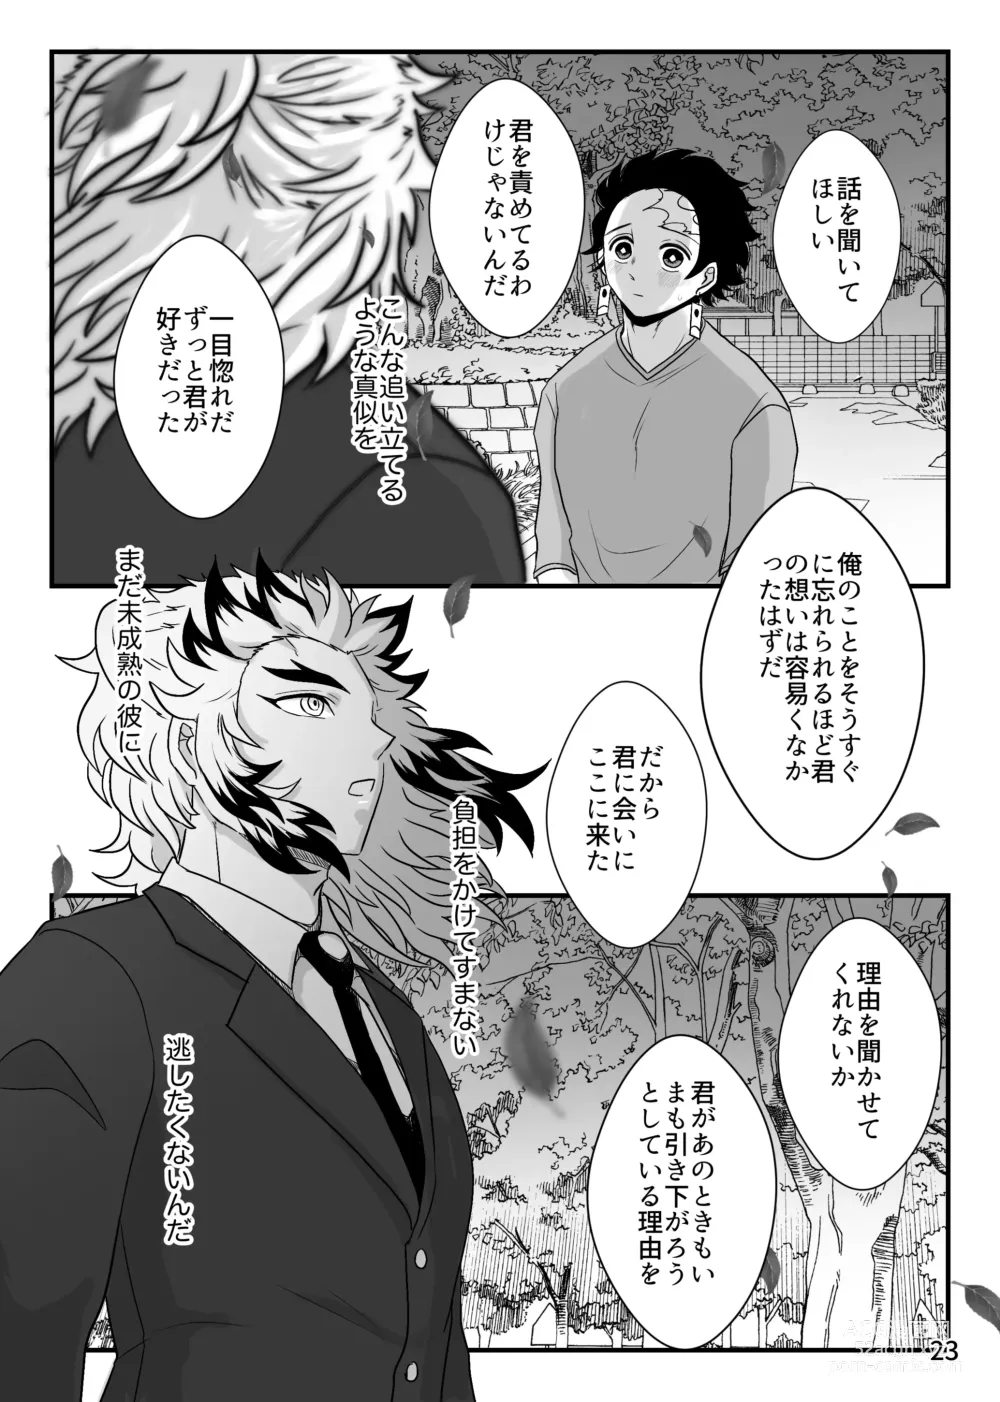 Page 23 of doujinshi Kono Gekijou o Shirazu ni